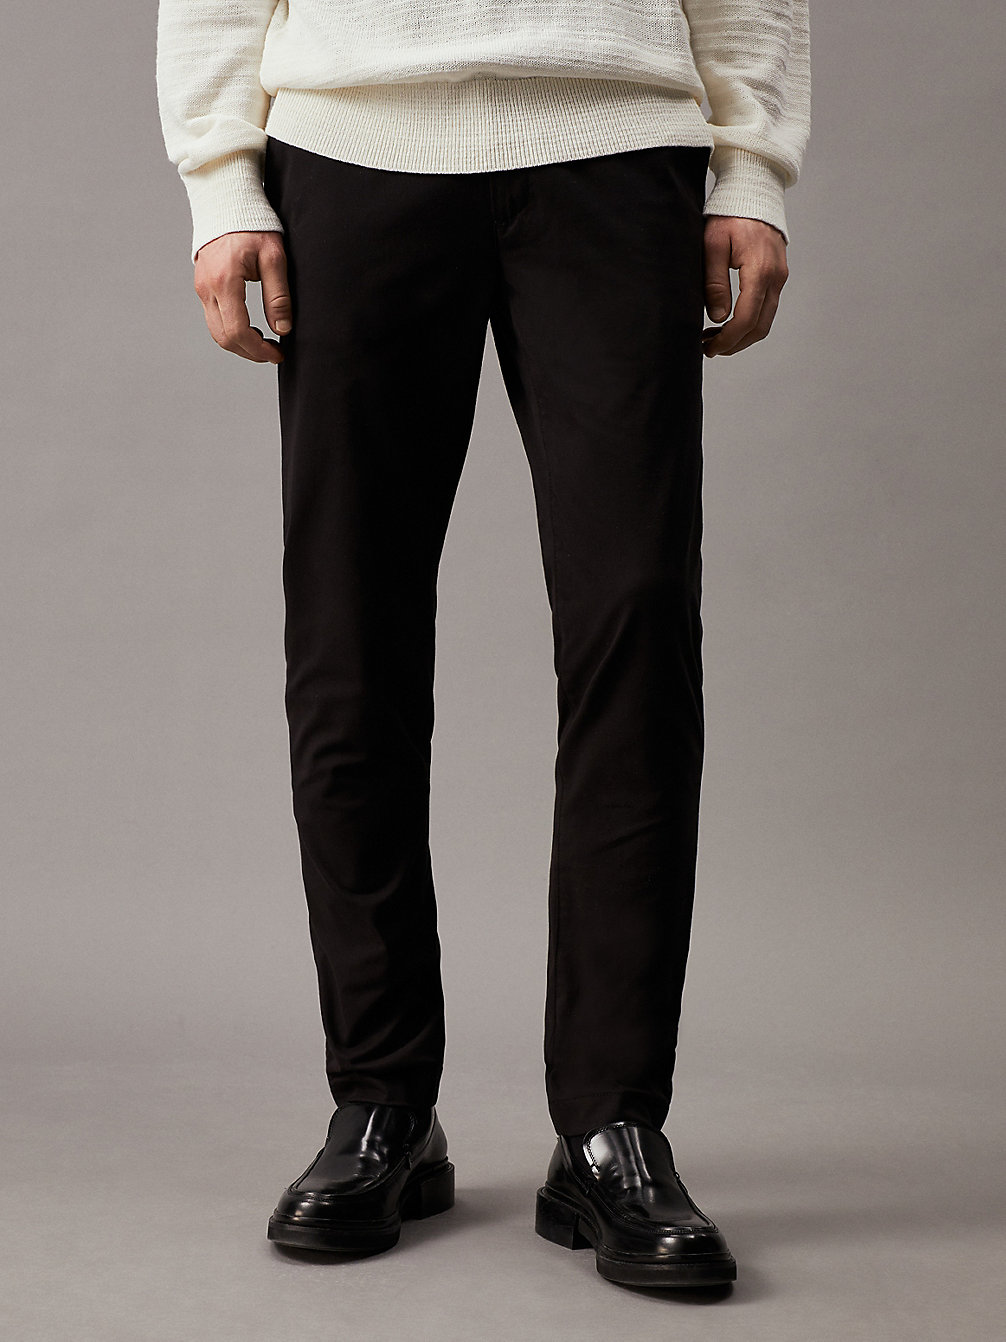 CK BLACK Pantaloni Chino Slim Con Cintura undefined Uomini Calvin Klein